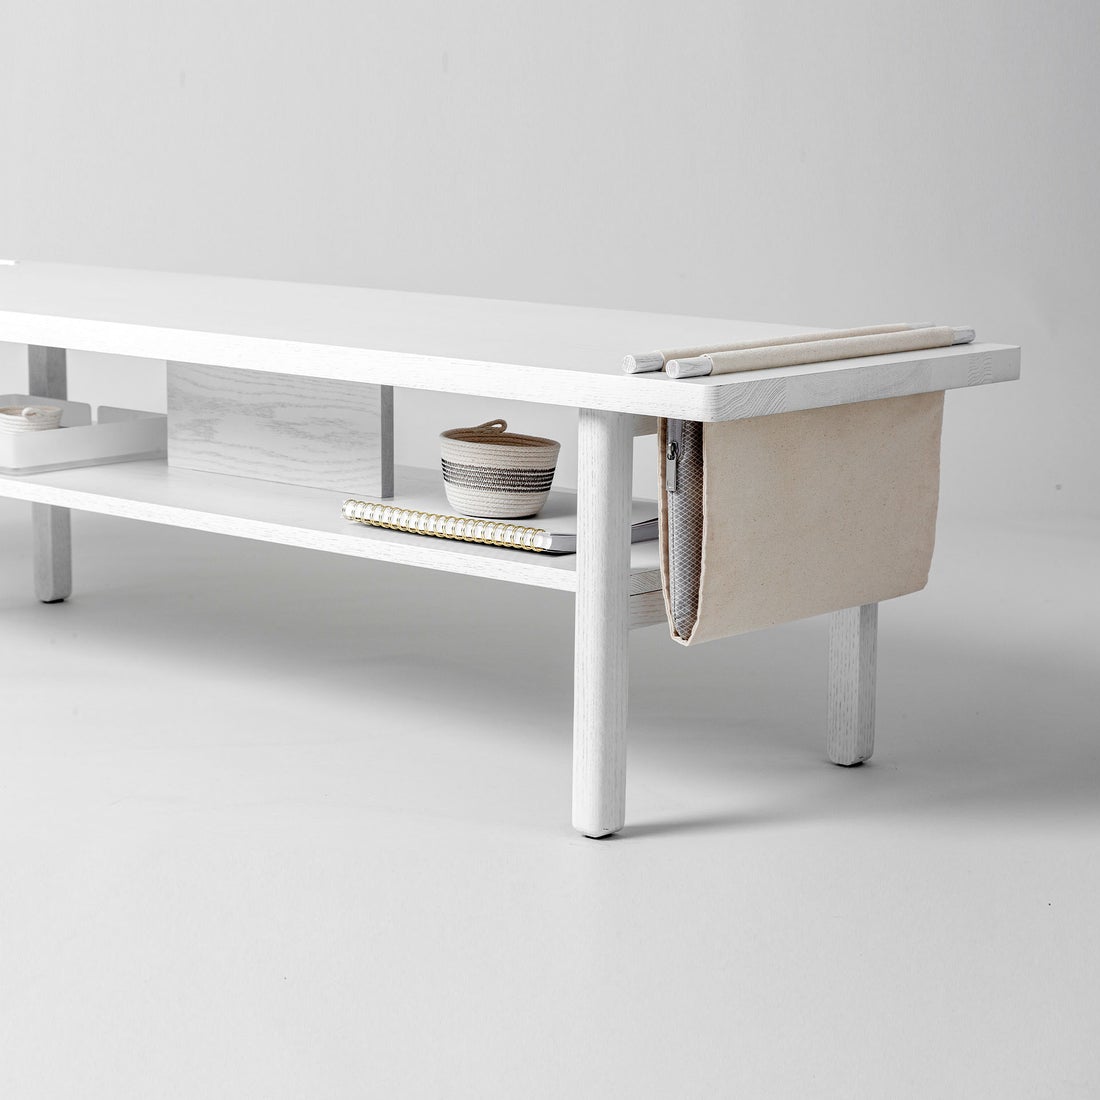 White modern bench with storage